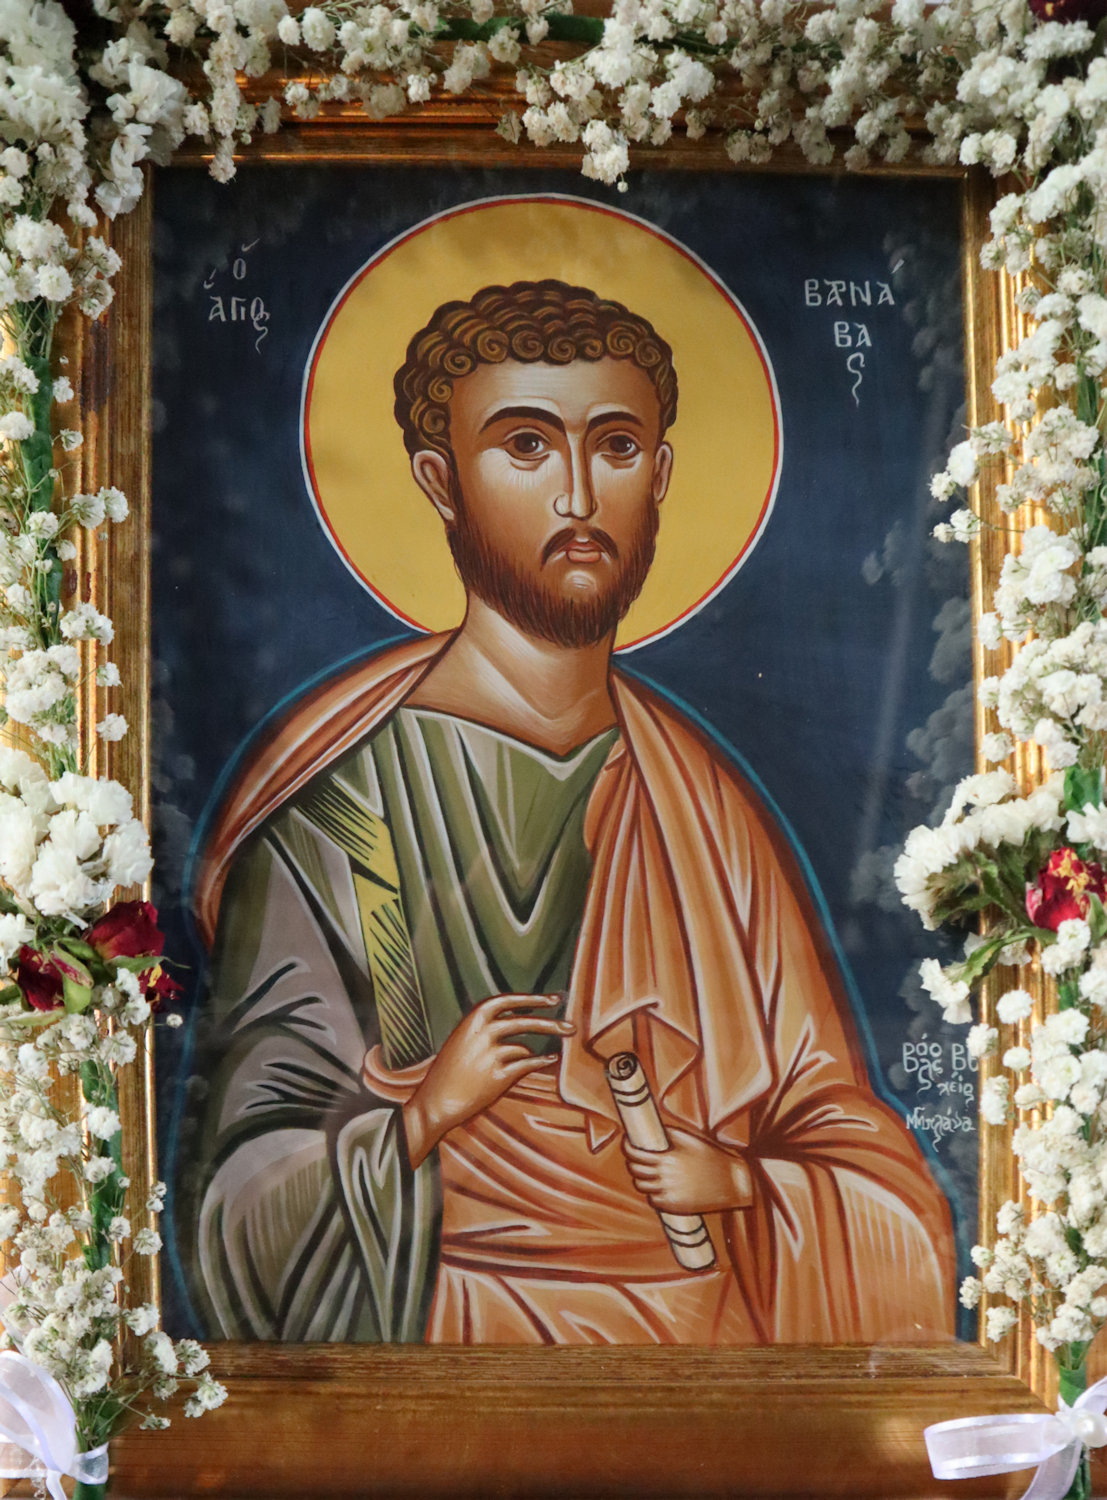 Die an seinem Festtag geschmückte Ikone in der Georgskirche in Agria bei Volos in Griechenland